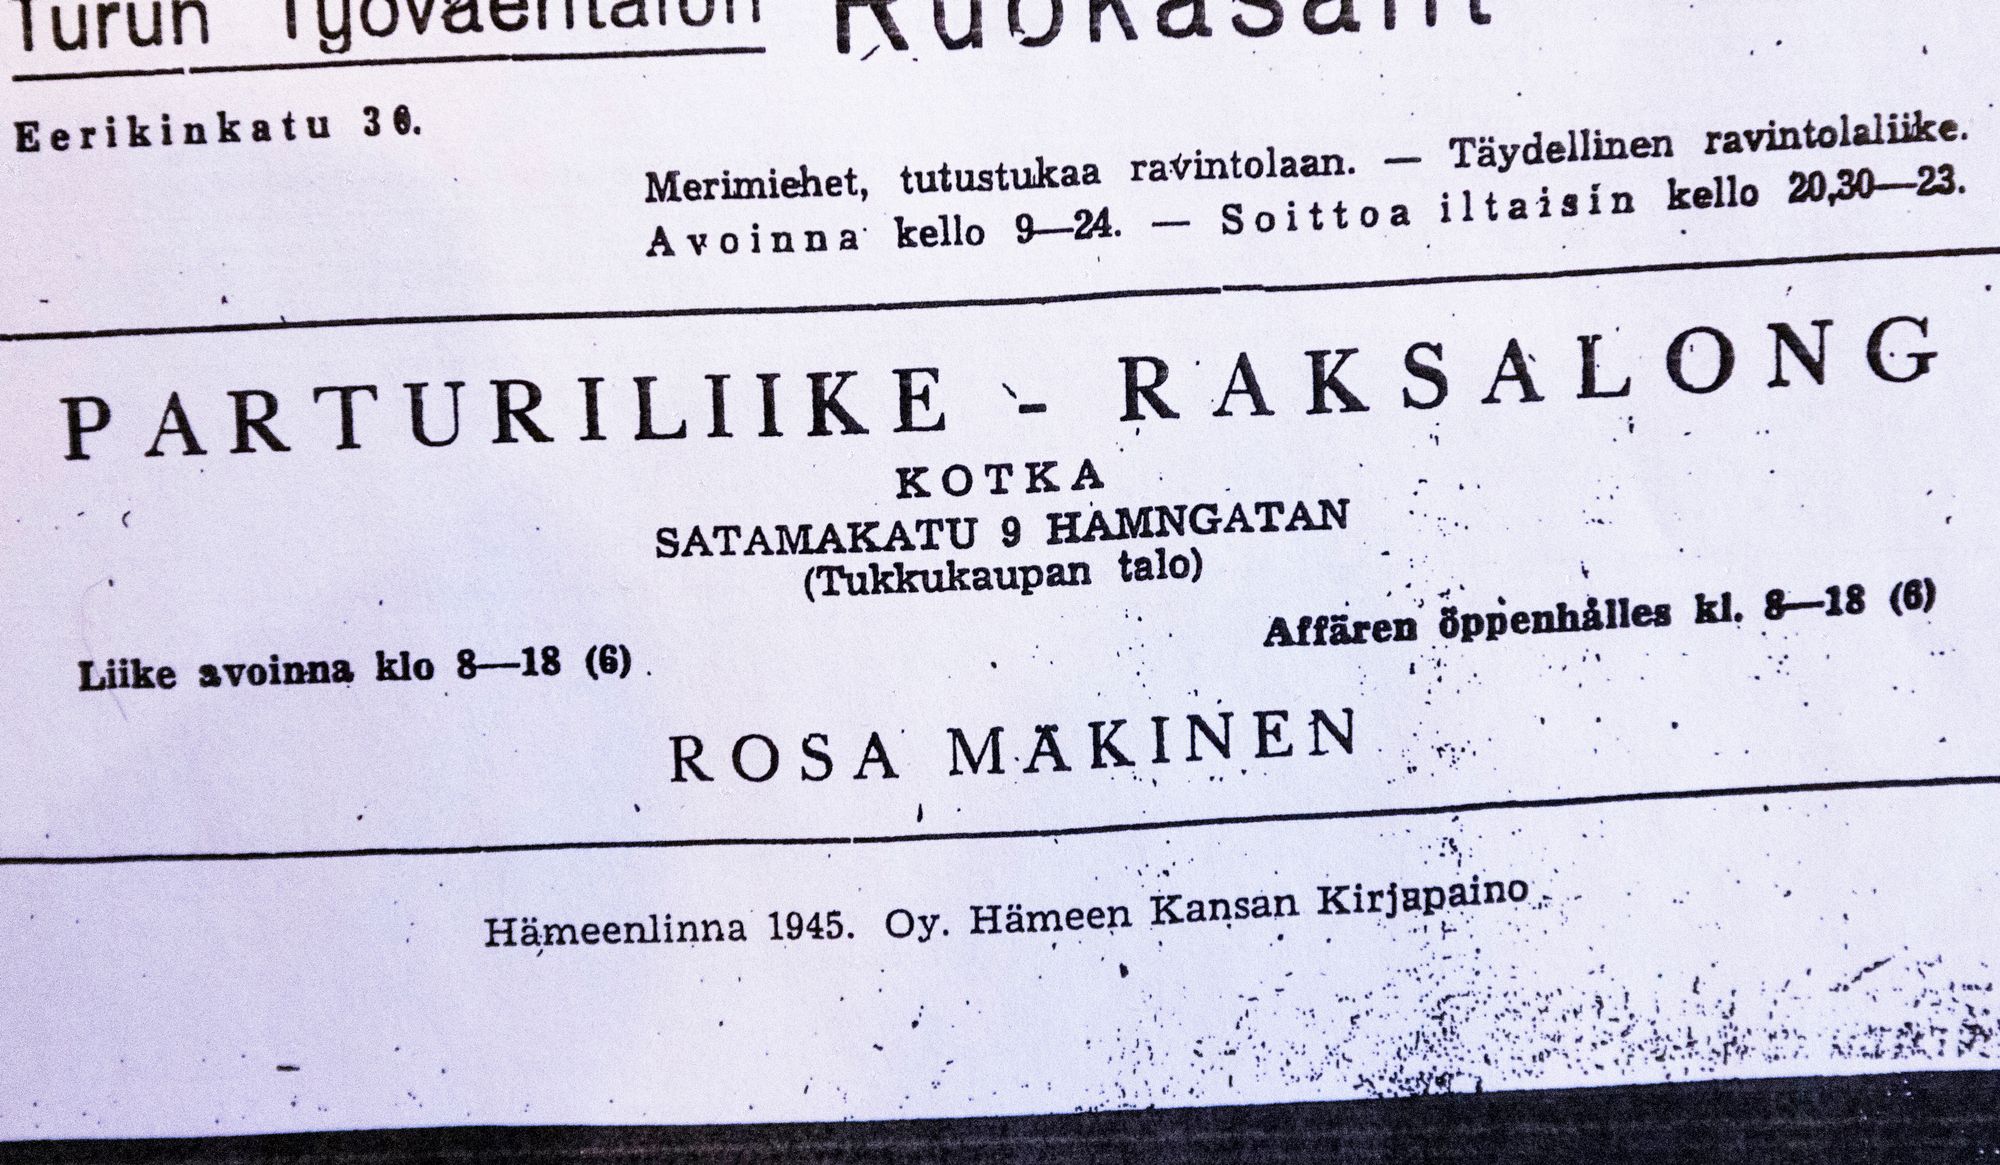 Vanha lehti-ilmoitus osoitteessa Satamakatu 9 sijainneesta parturiliikkeestä © Juha Metso